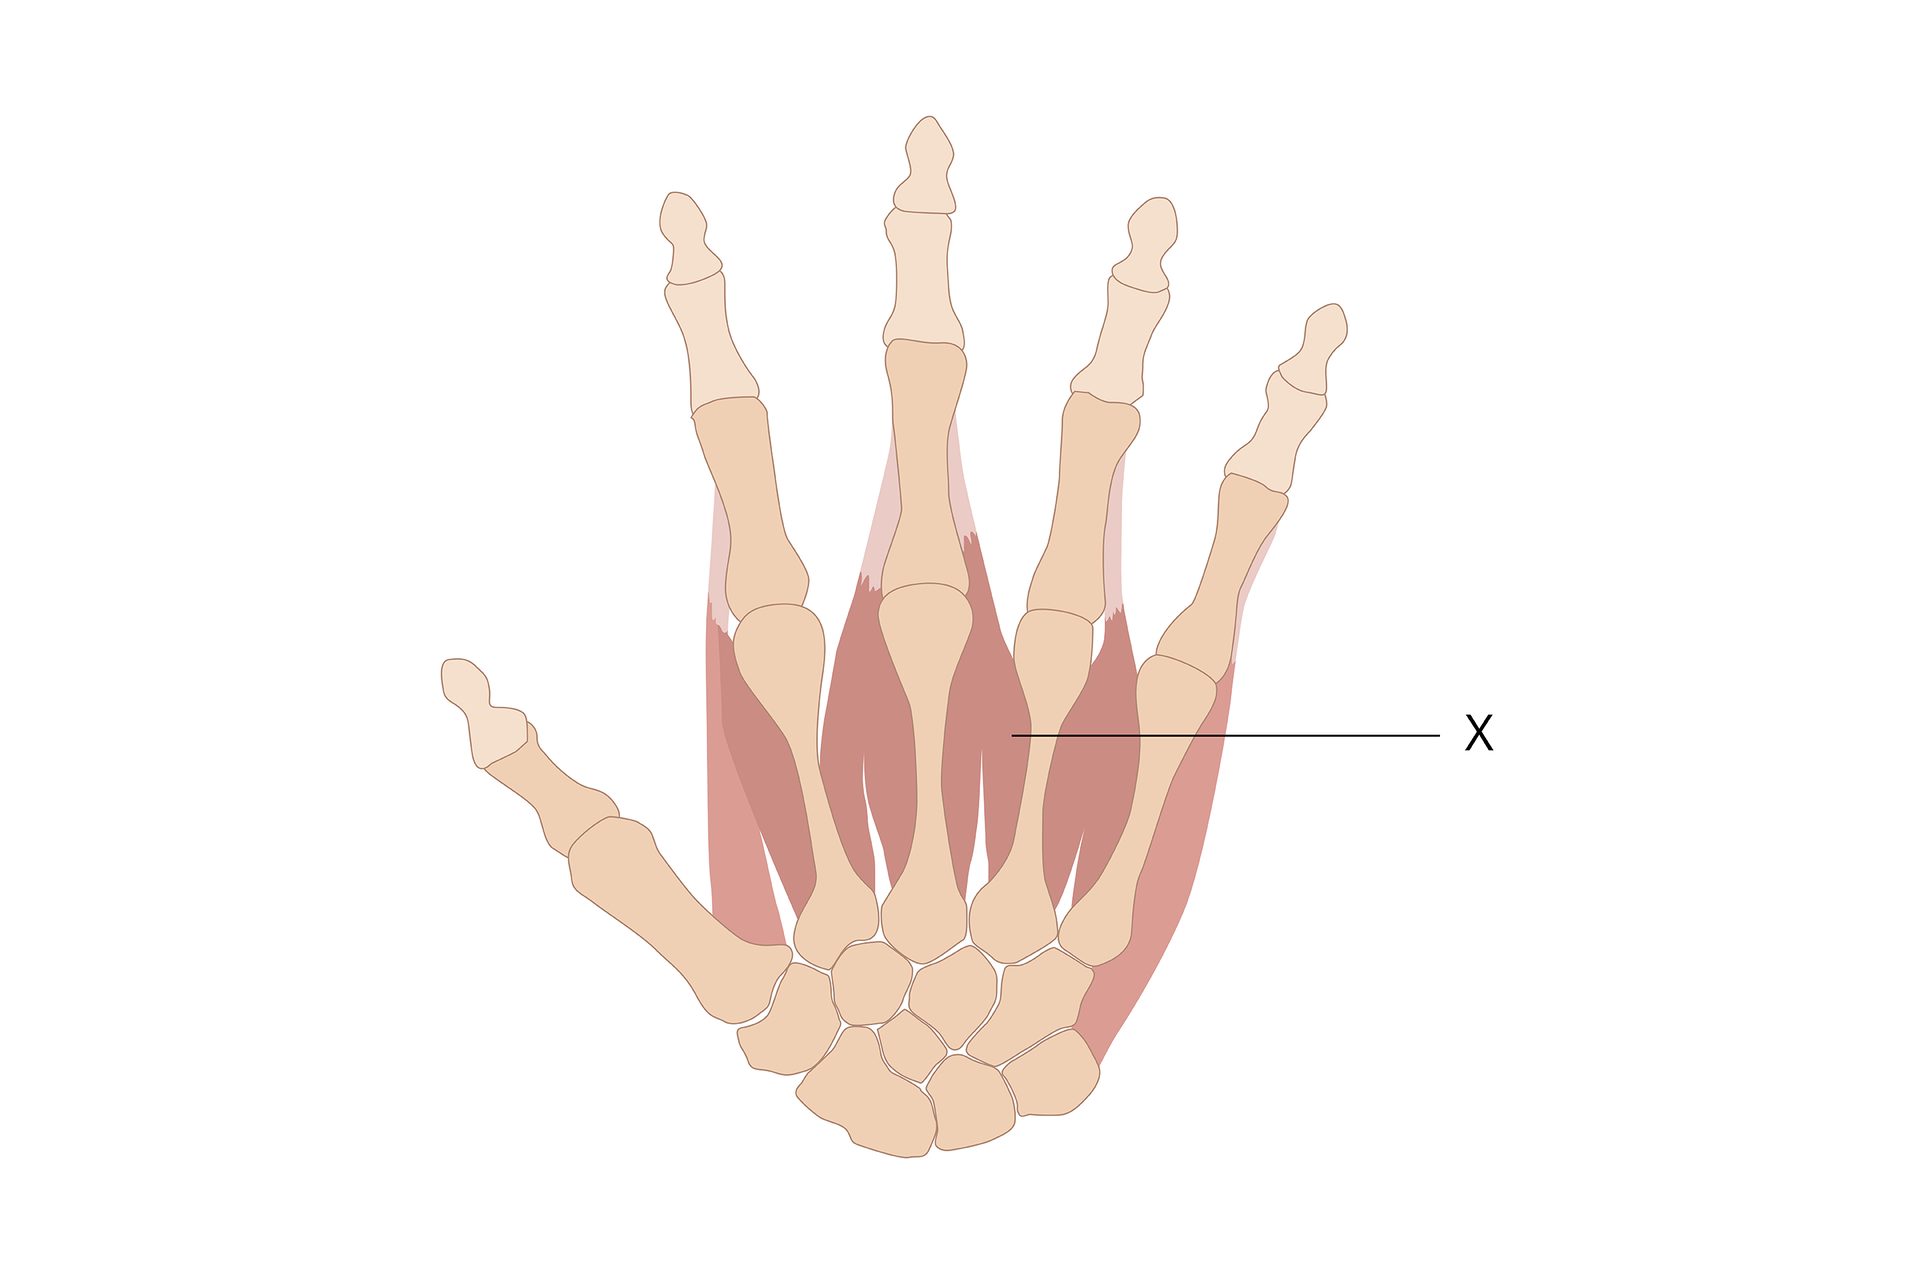 Na grafice widać dłoń człowieka. Widać kości oraz mięśnie śródręcza. Brzusiec mięśni są zaznaczone na czerwono, a ścięgna na biało. Literą X zaznaczona jest czerwona część mięśnia, która jest ułożona równolegle do kości śródręcza.